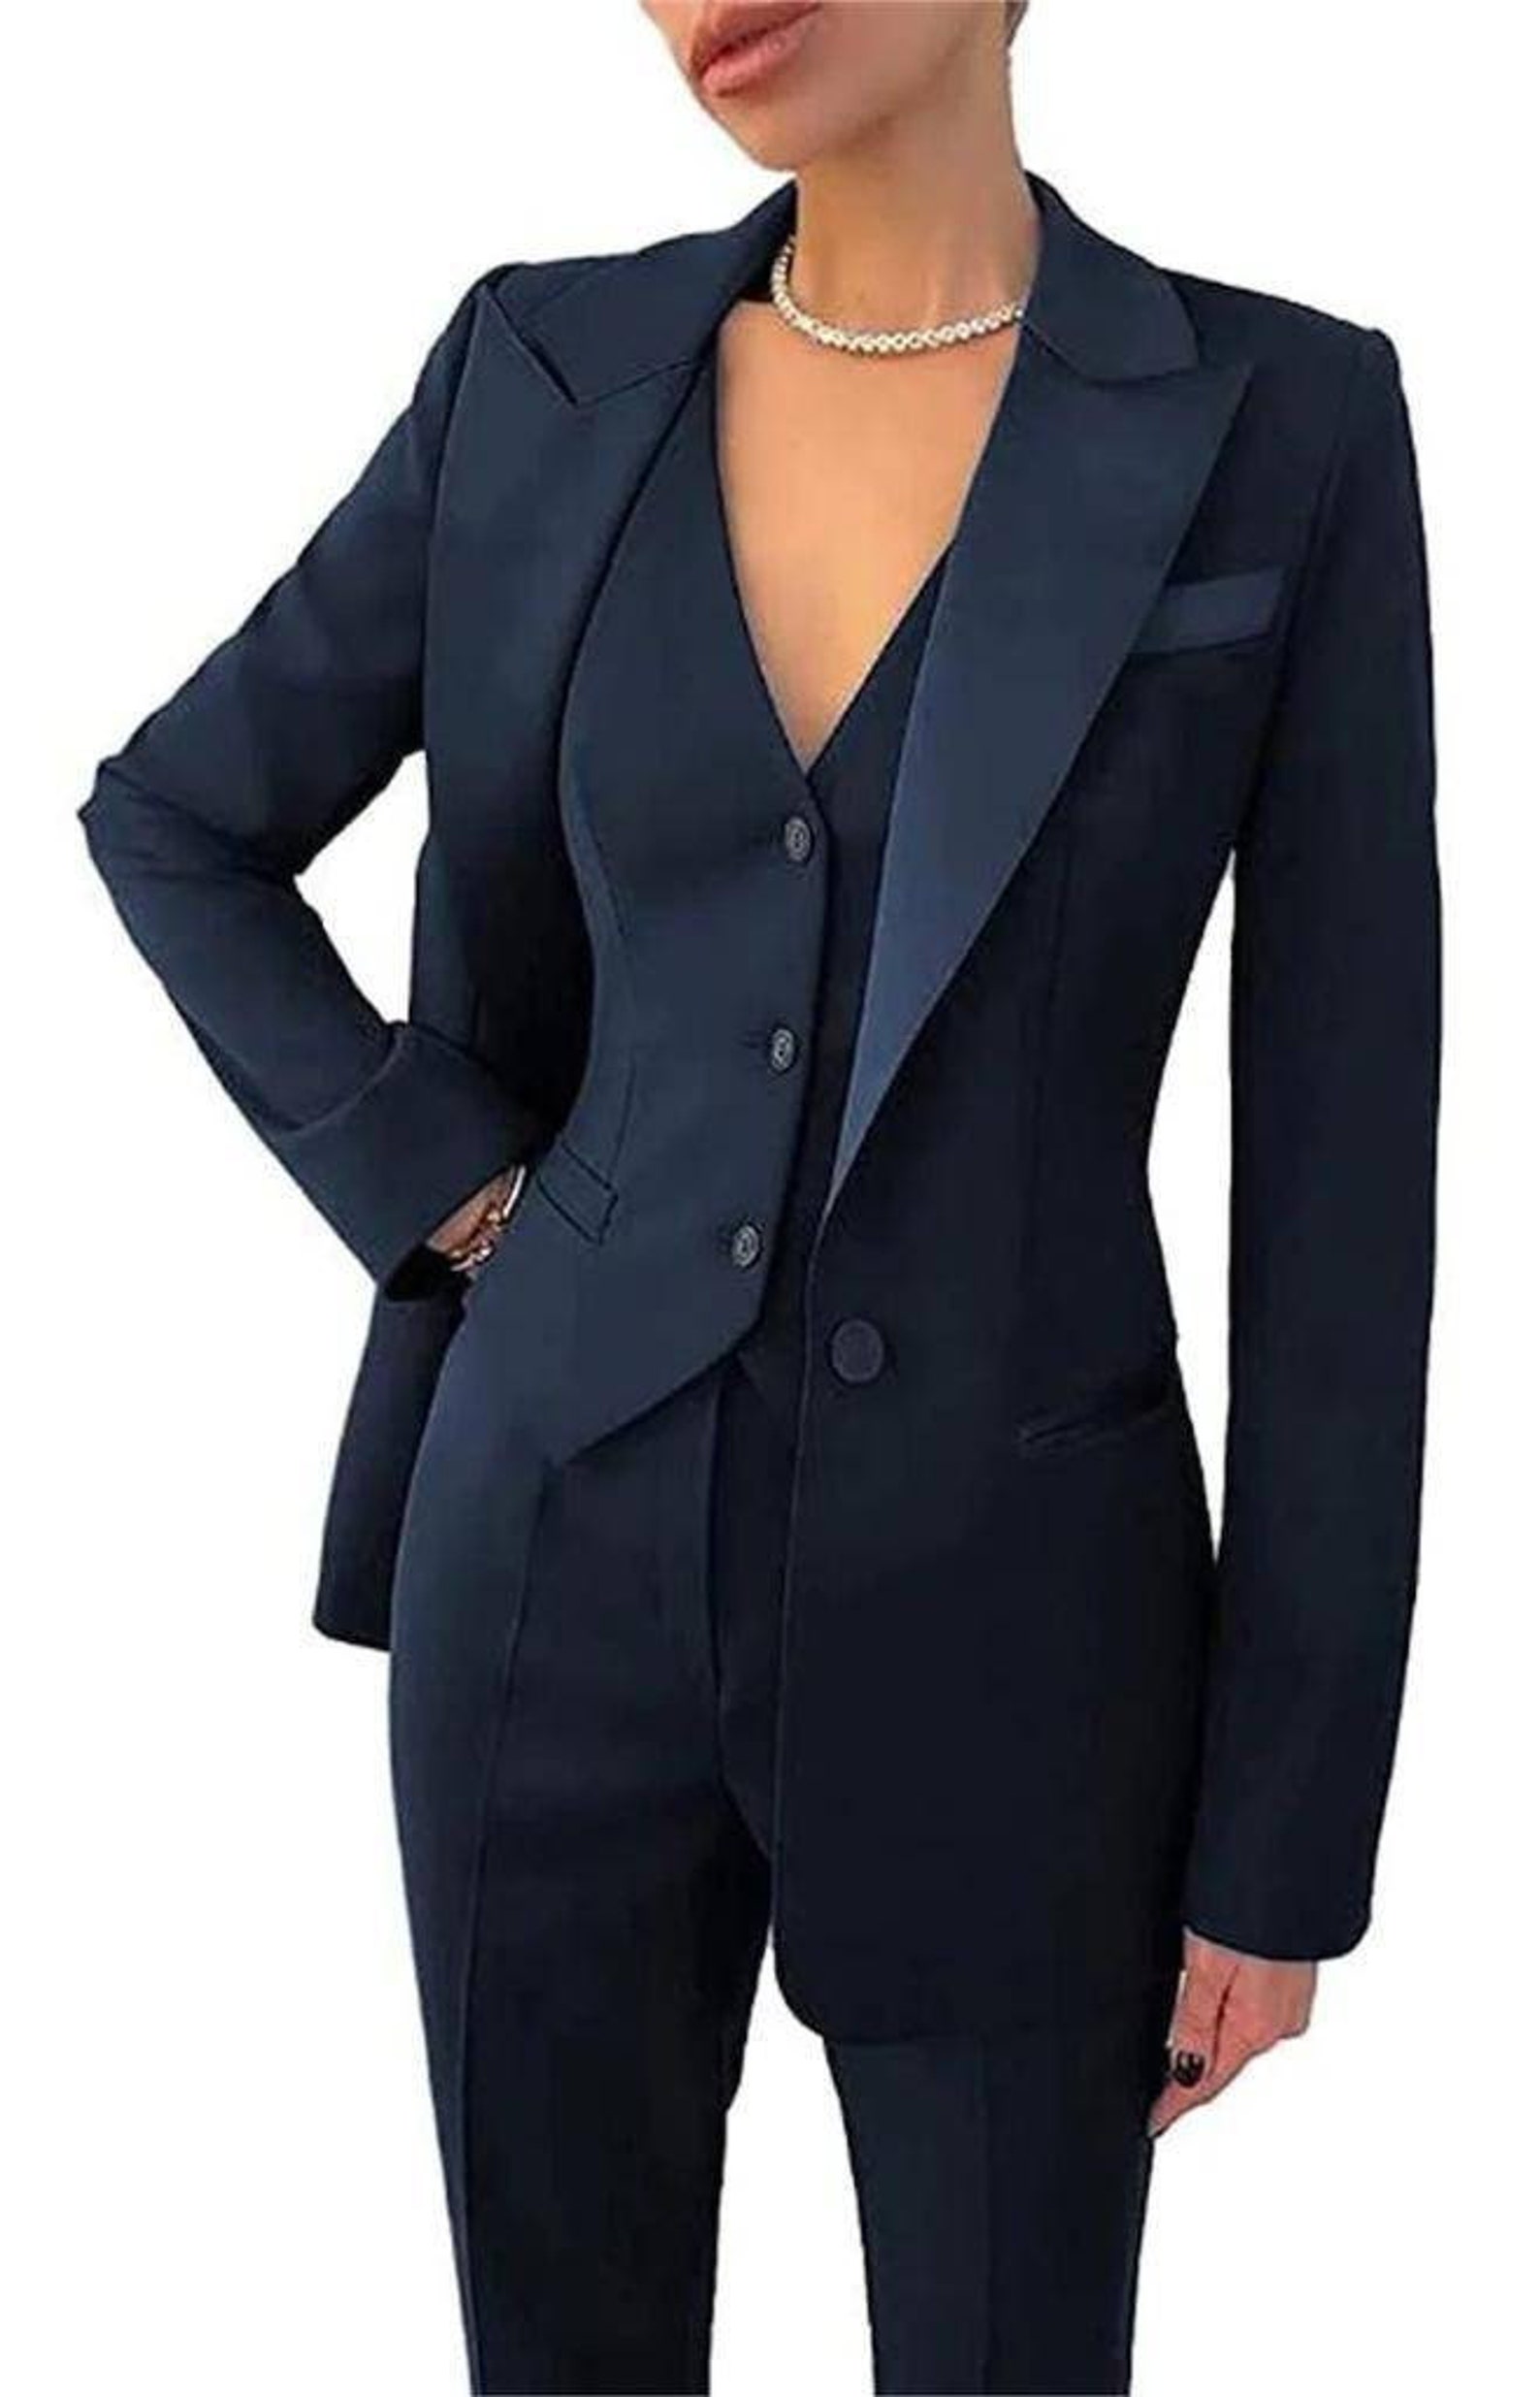 Blue Suit for Women Three Piece Suit Top Womens Suit - Etsy